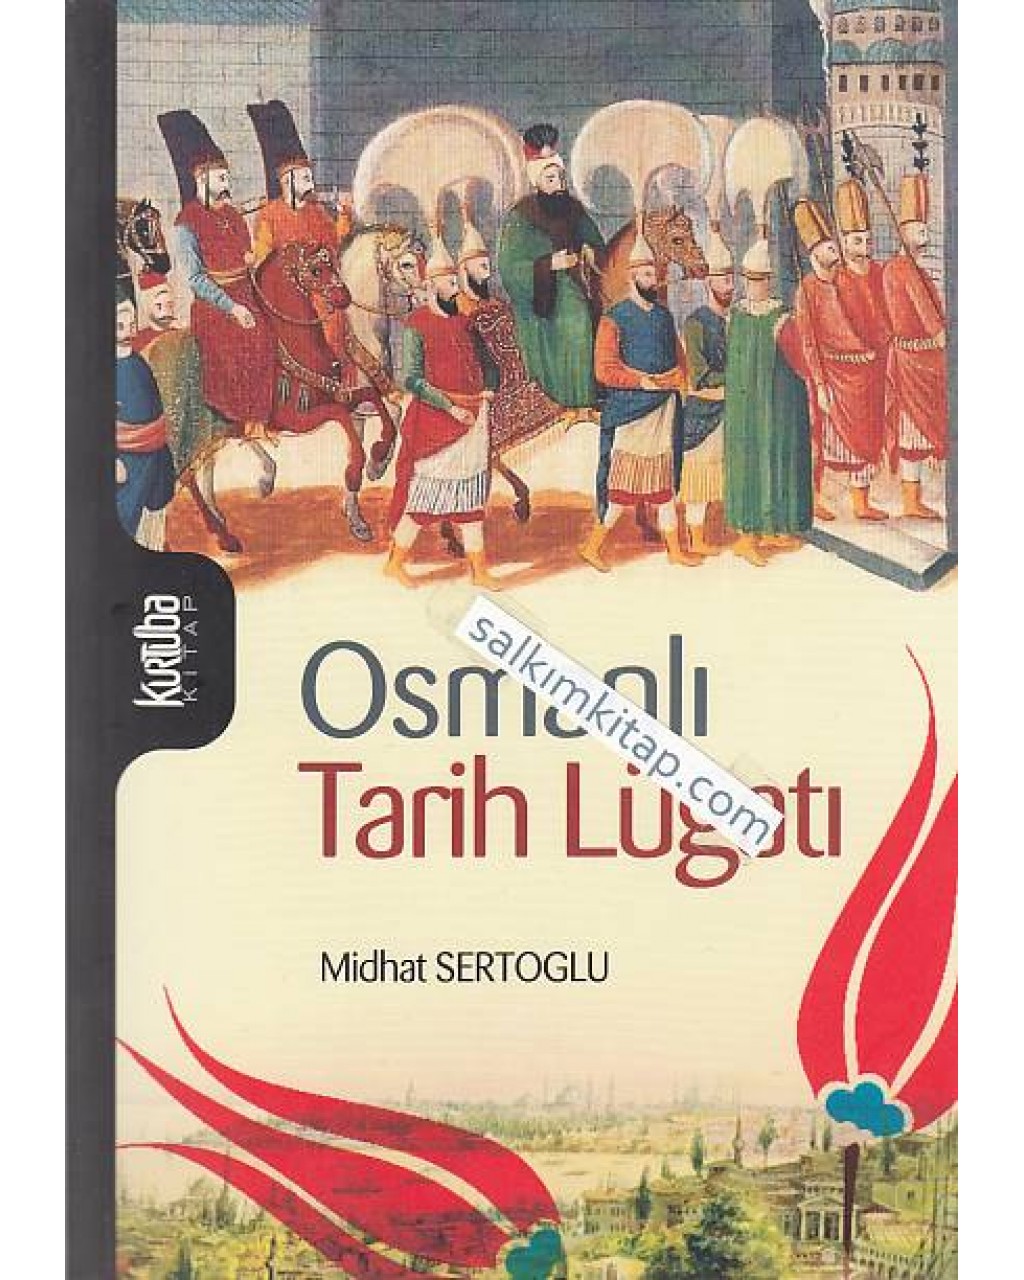 Osmanlı Tarih Lugatı